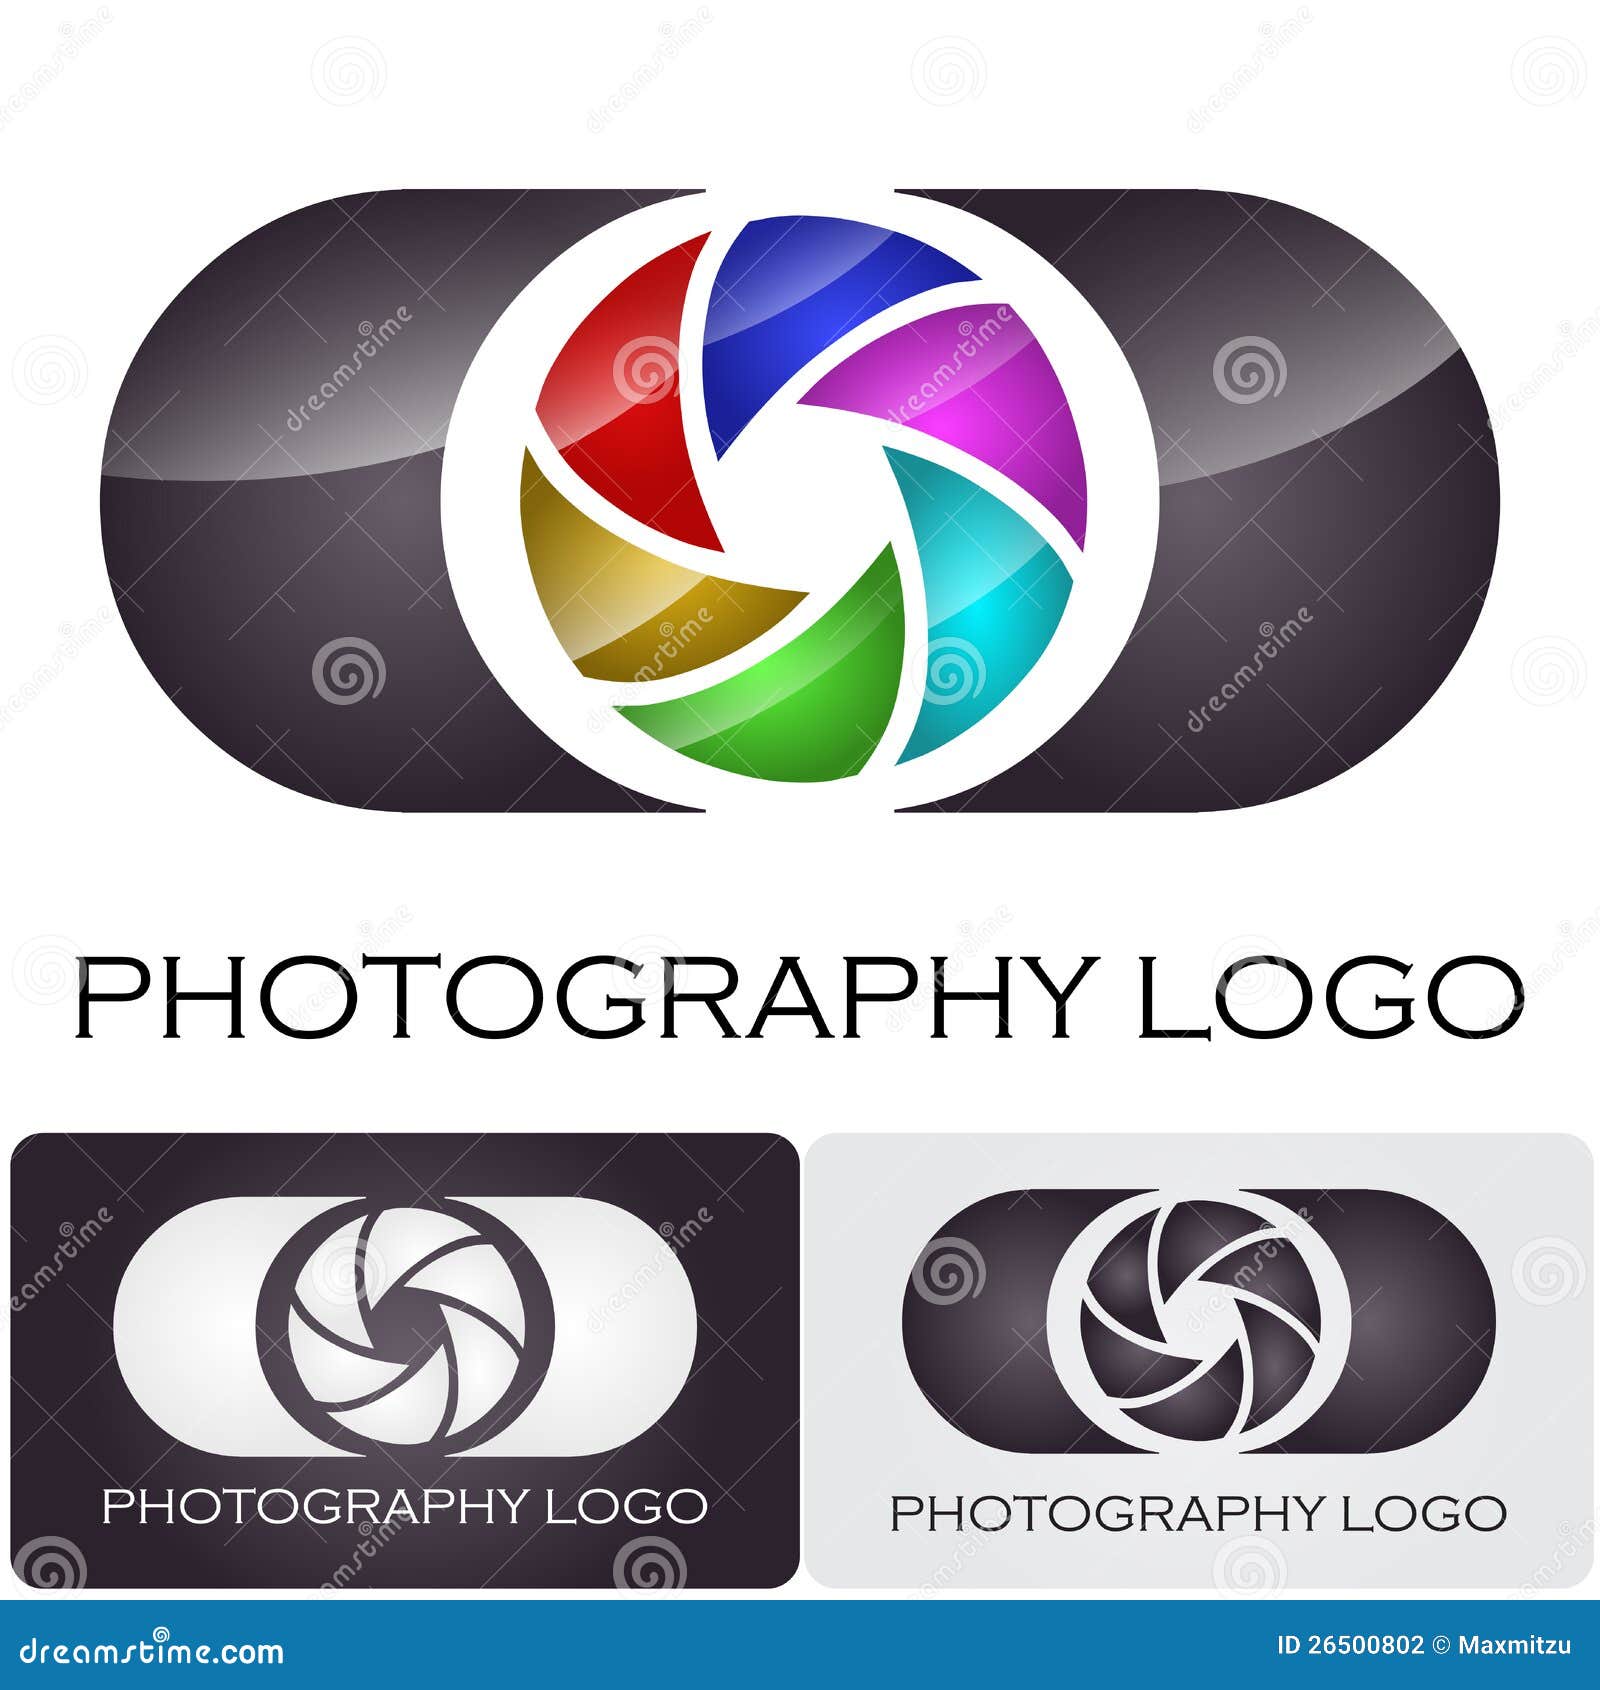 photography company logo brush style